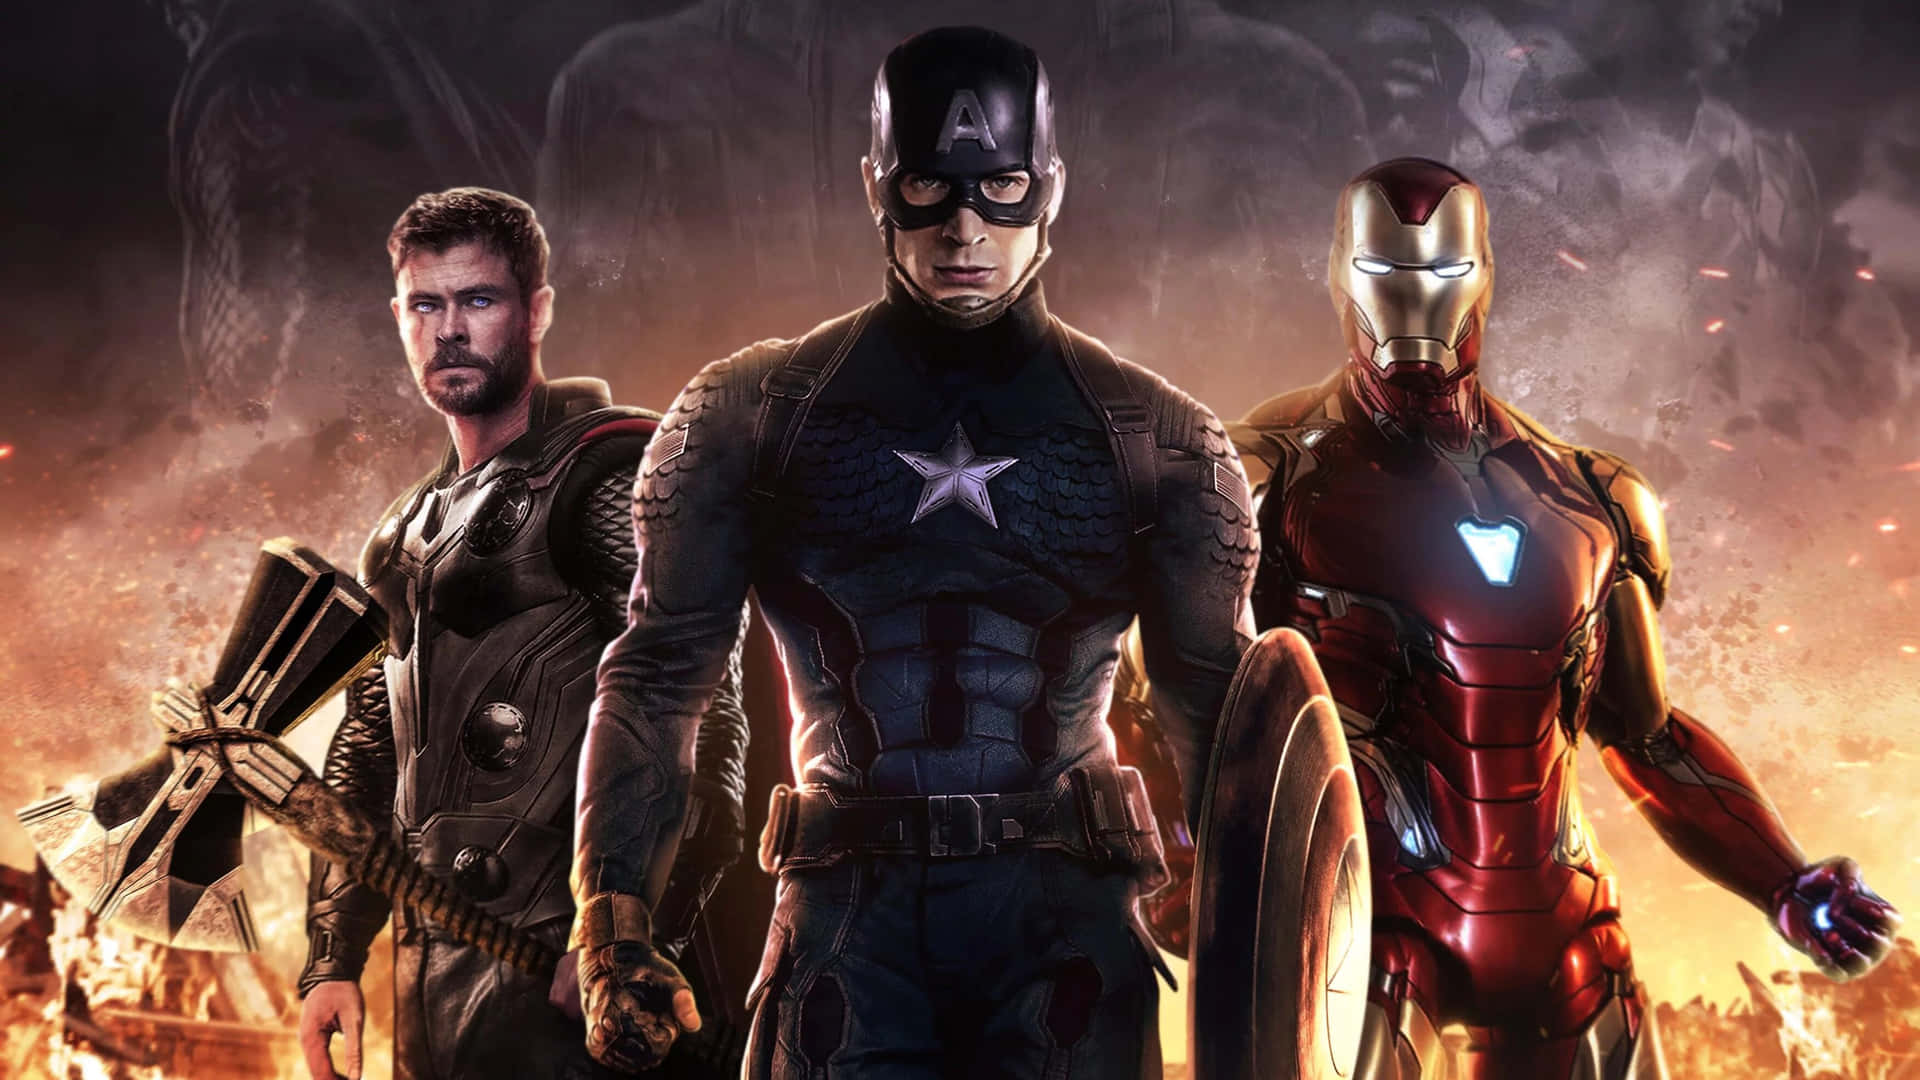 The Avengers assemble one last time in "Avengers: Endgame"